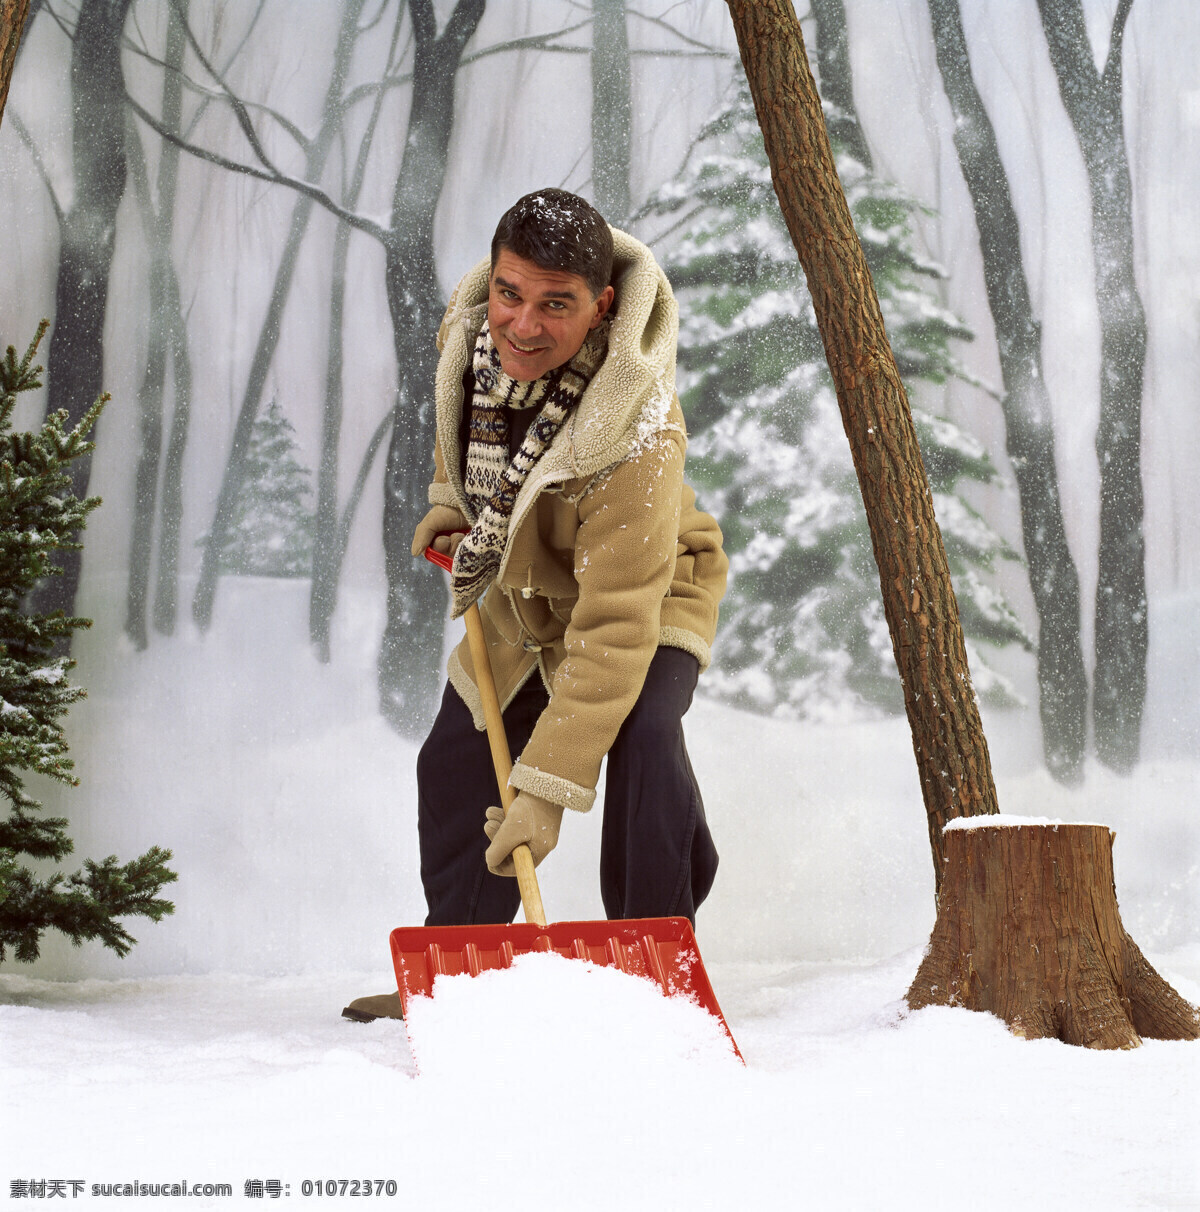 清理 雪 男人 冬天风景 雪地 外国家庭 外国人物 幸福 家庭人物 男性 生活人物 人物图片